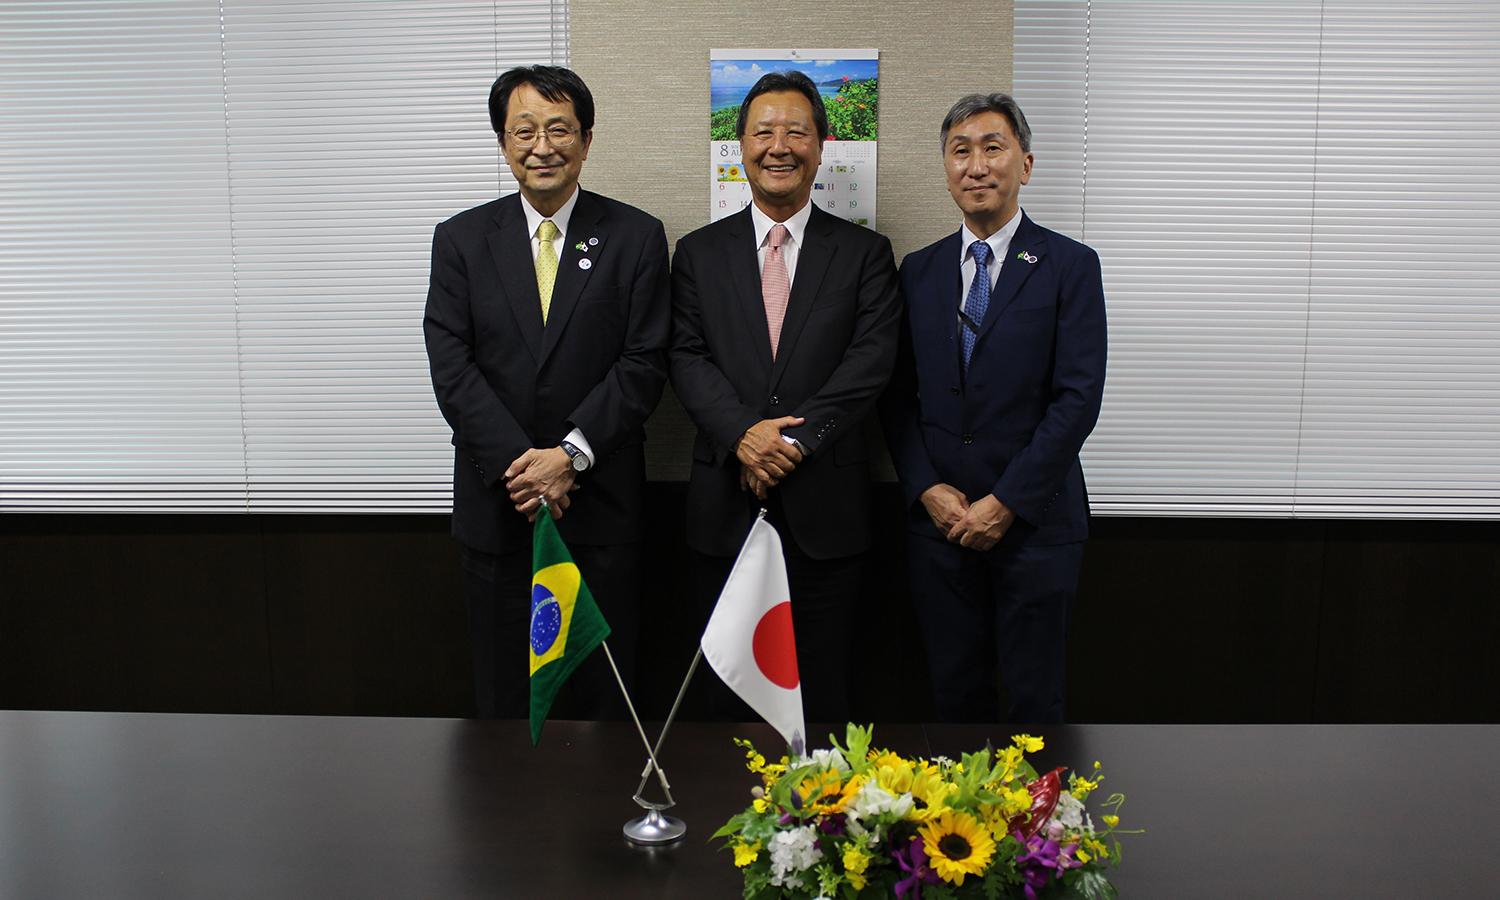 左から永田学長、西森議員、及び大根田大学執行役員